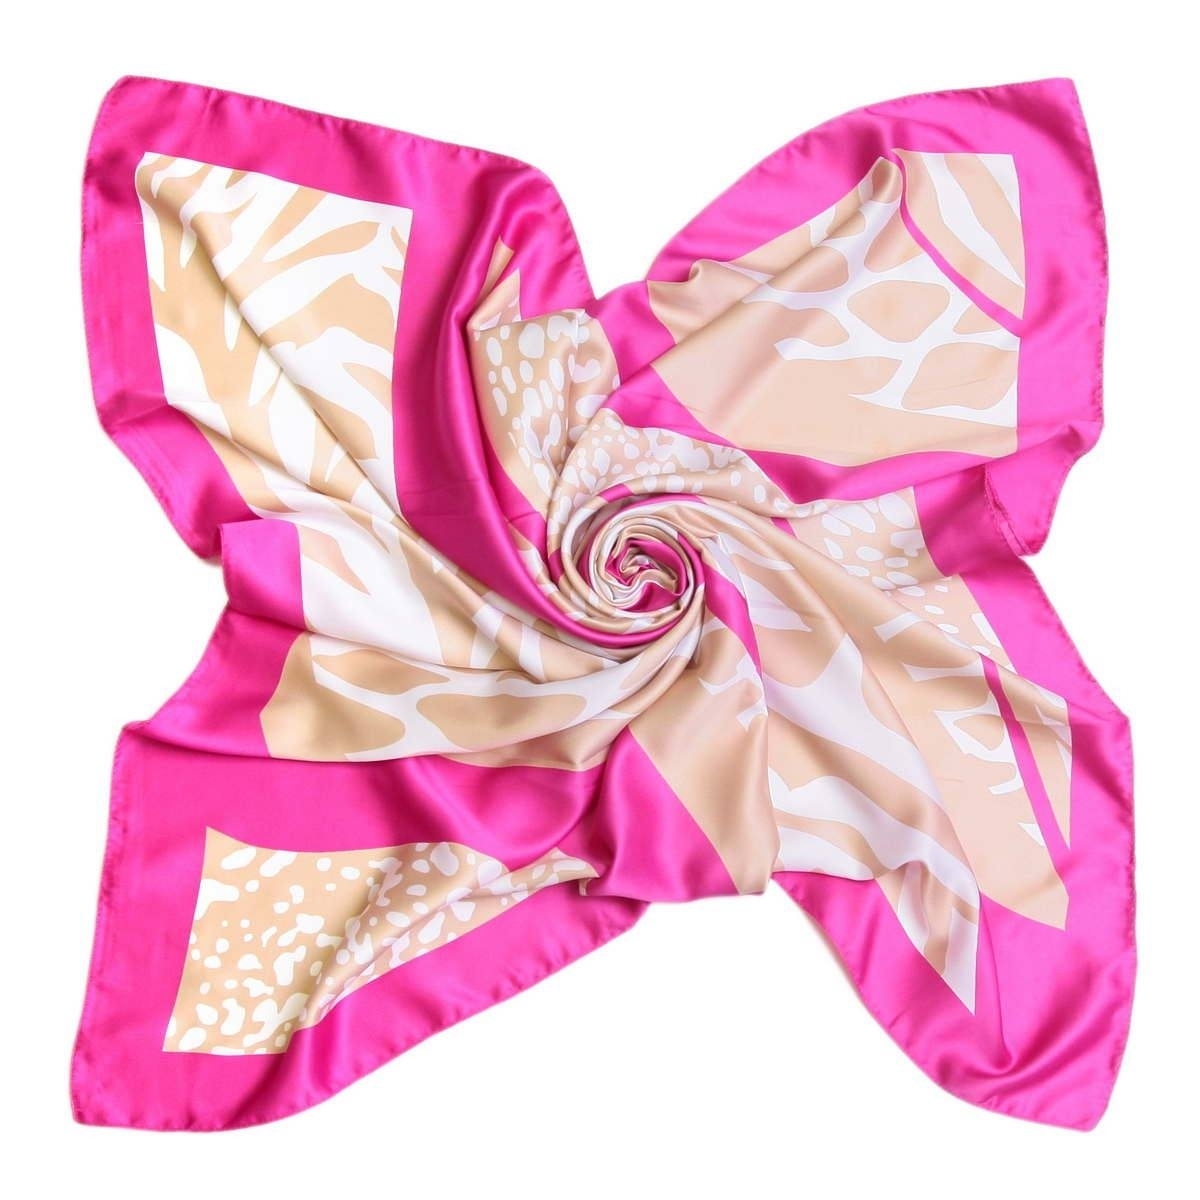 Песни розовый платочек. Платок Roby foulards. Нежно-розовый платок 52360. Розовый шарф. Шейный платок розовый.